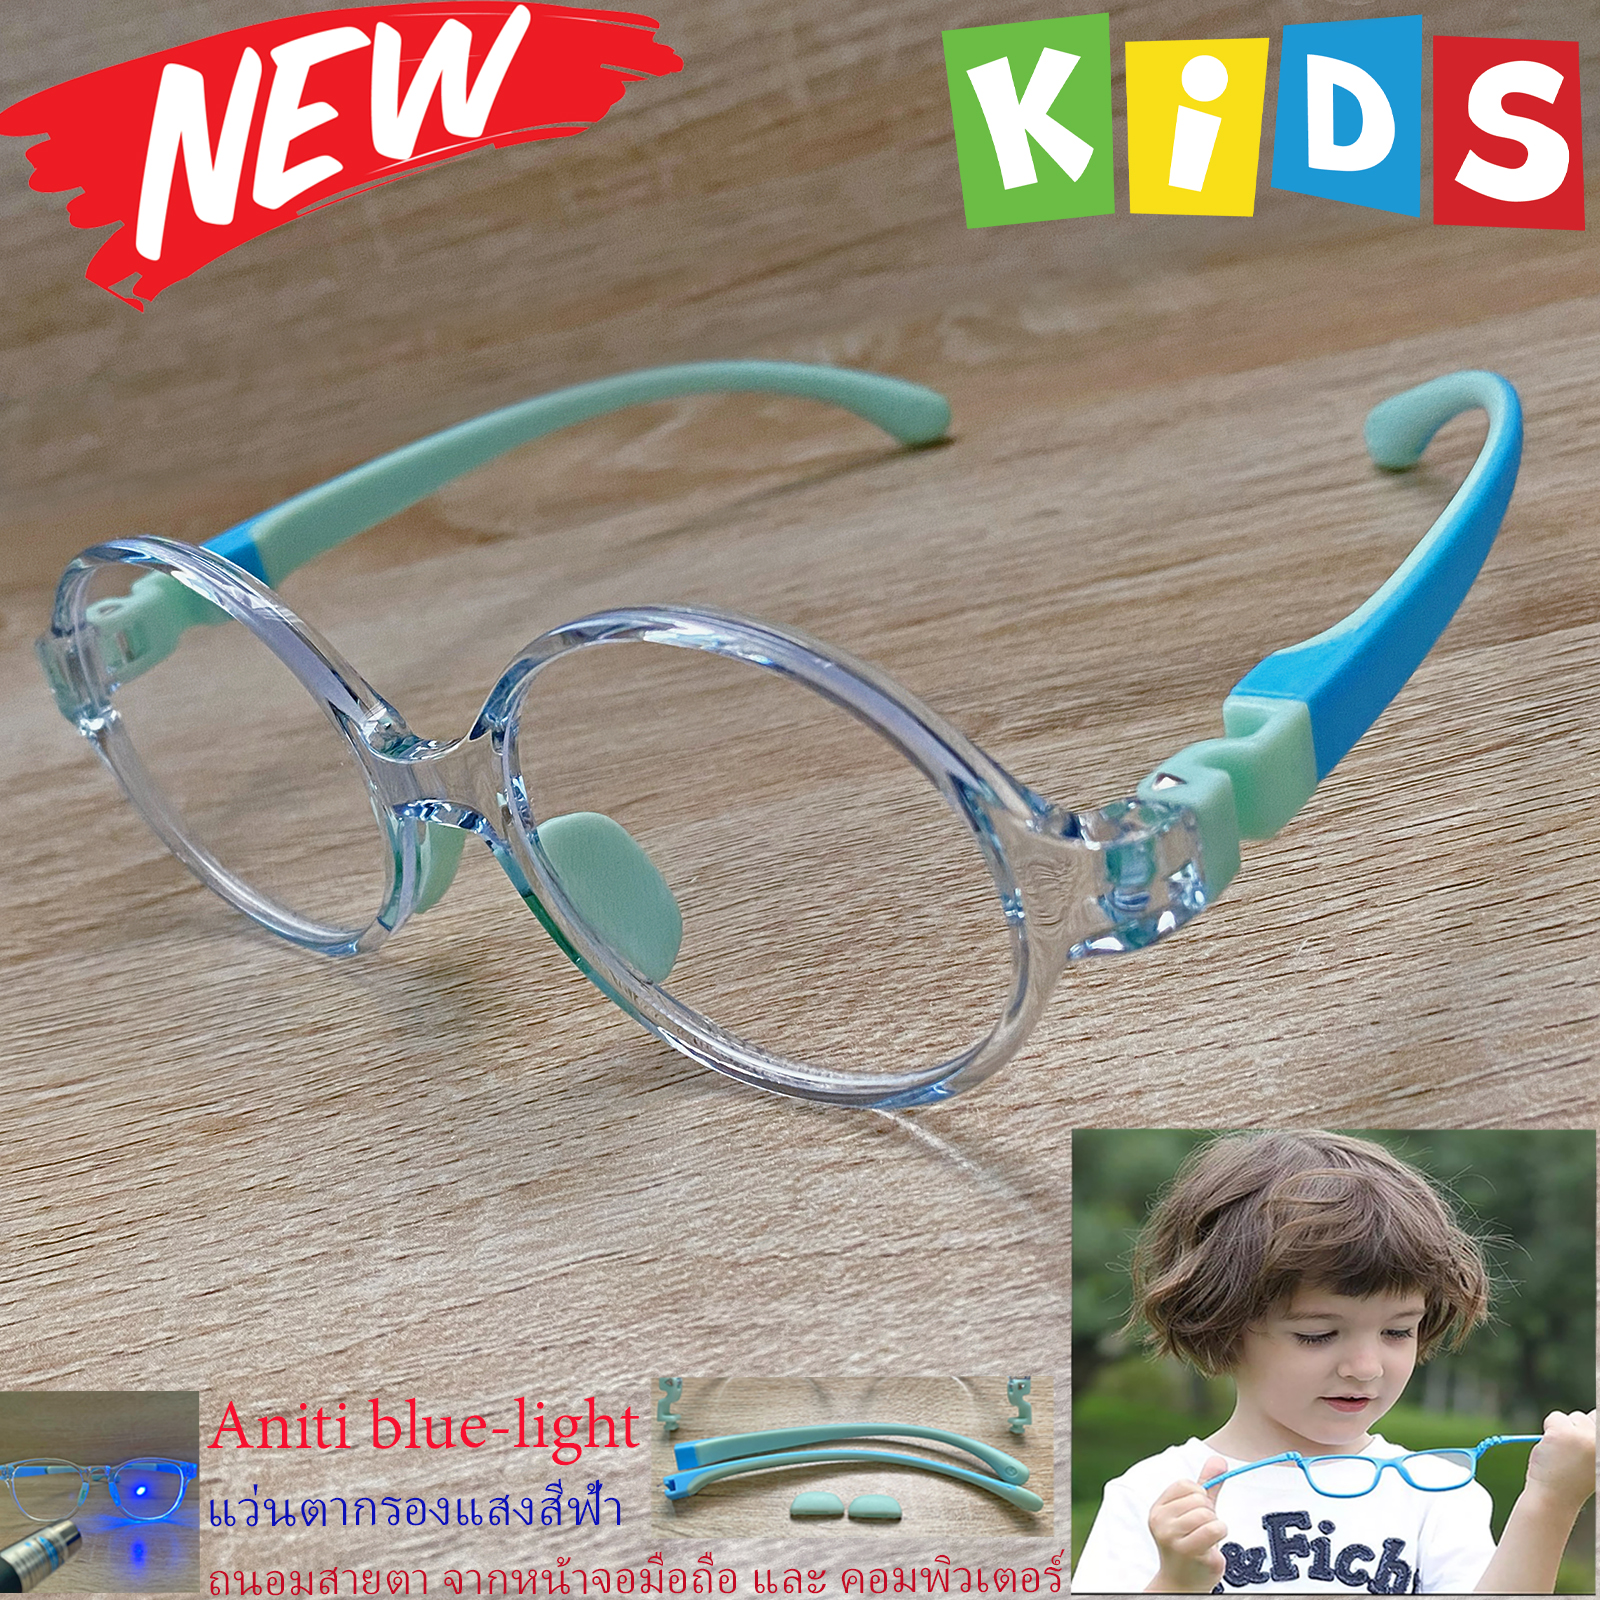 กรอบแว่นตาเด็ก กรองแสง สีฟ้า blue block แว่นเด็ก บลูบล็อค รุ่น 07 สีฟ้า ขาข้อต่อยืดหยุ่น ถอดขาเปลี่ยนได้ วัสดุTR90 เหมาะสำหรับเลนส์สายตา